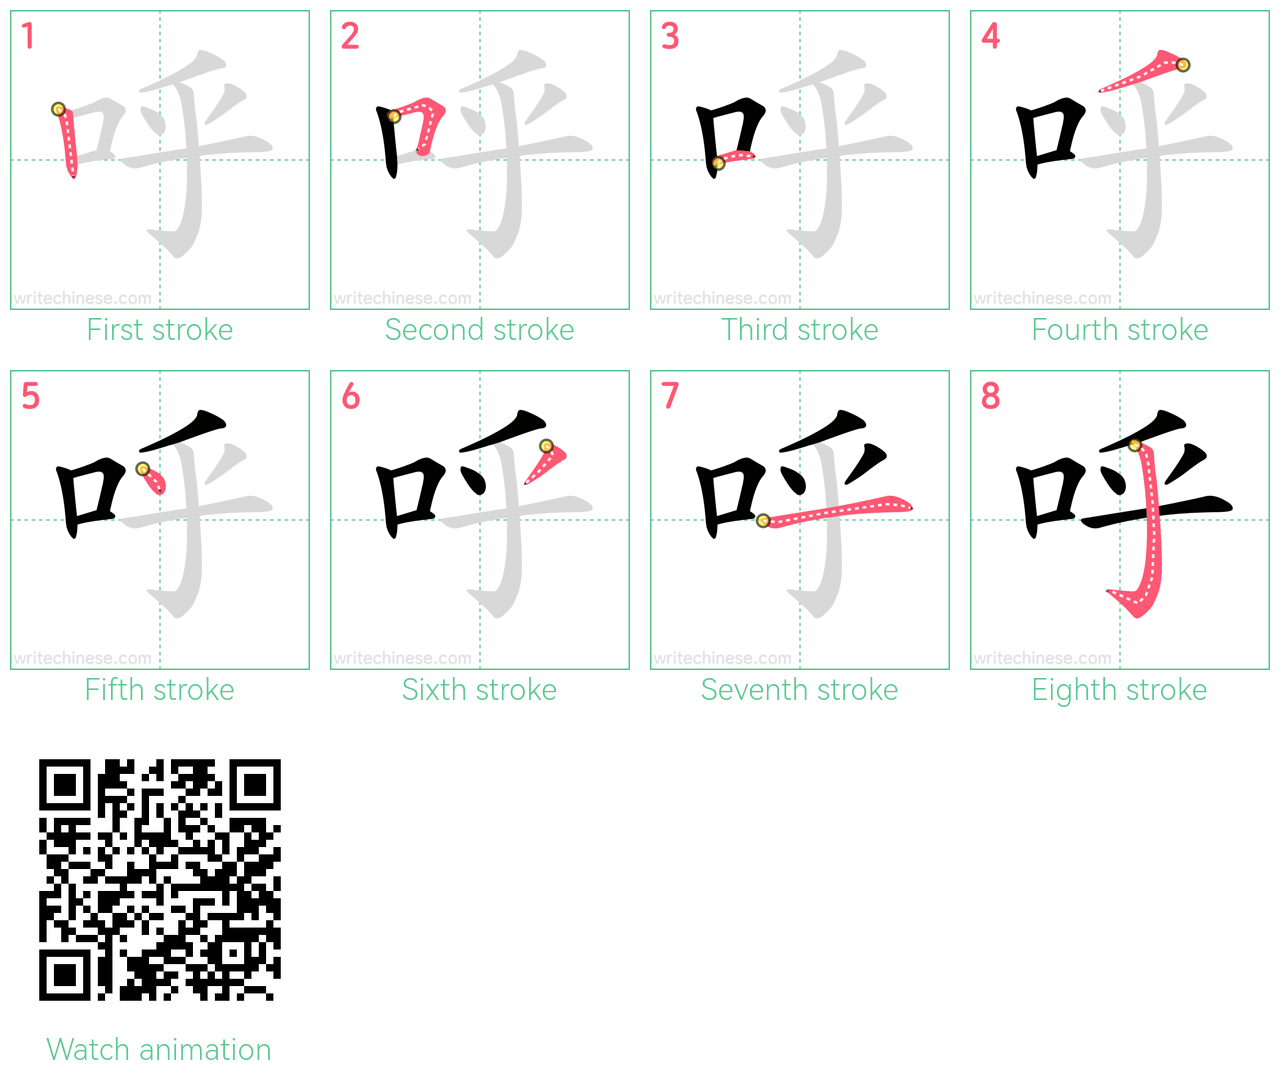 呼 step-by-step stroke order diagrams